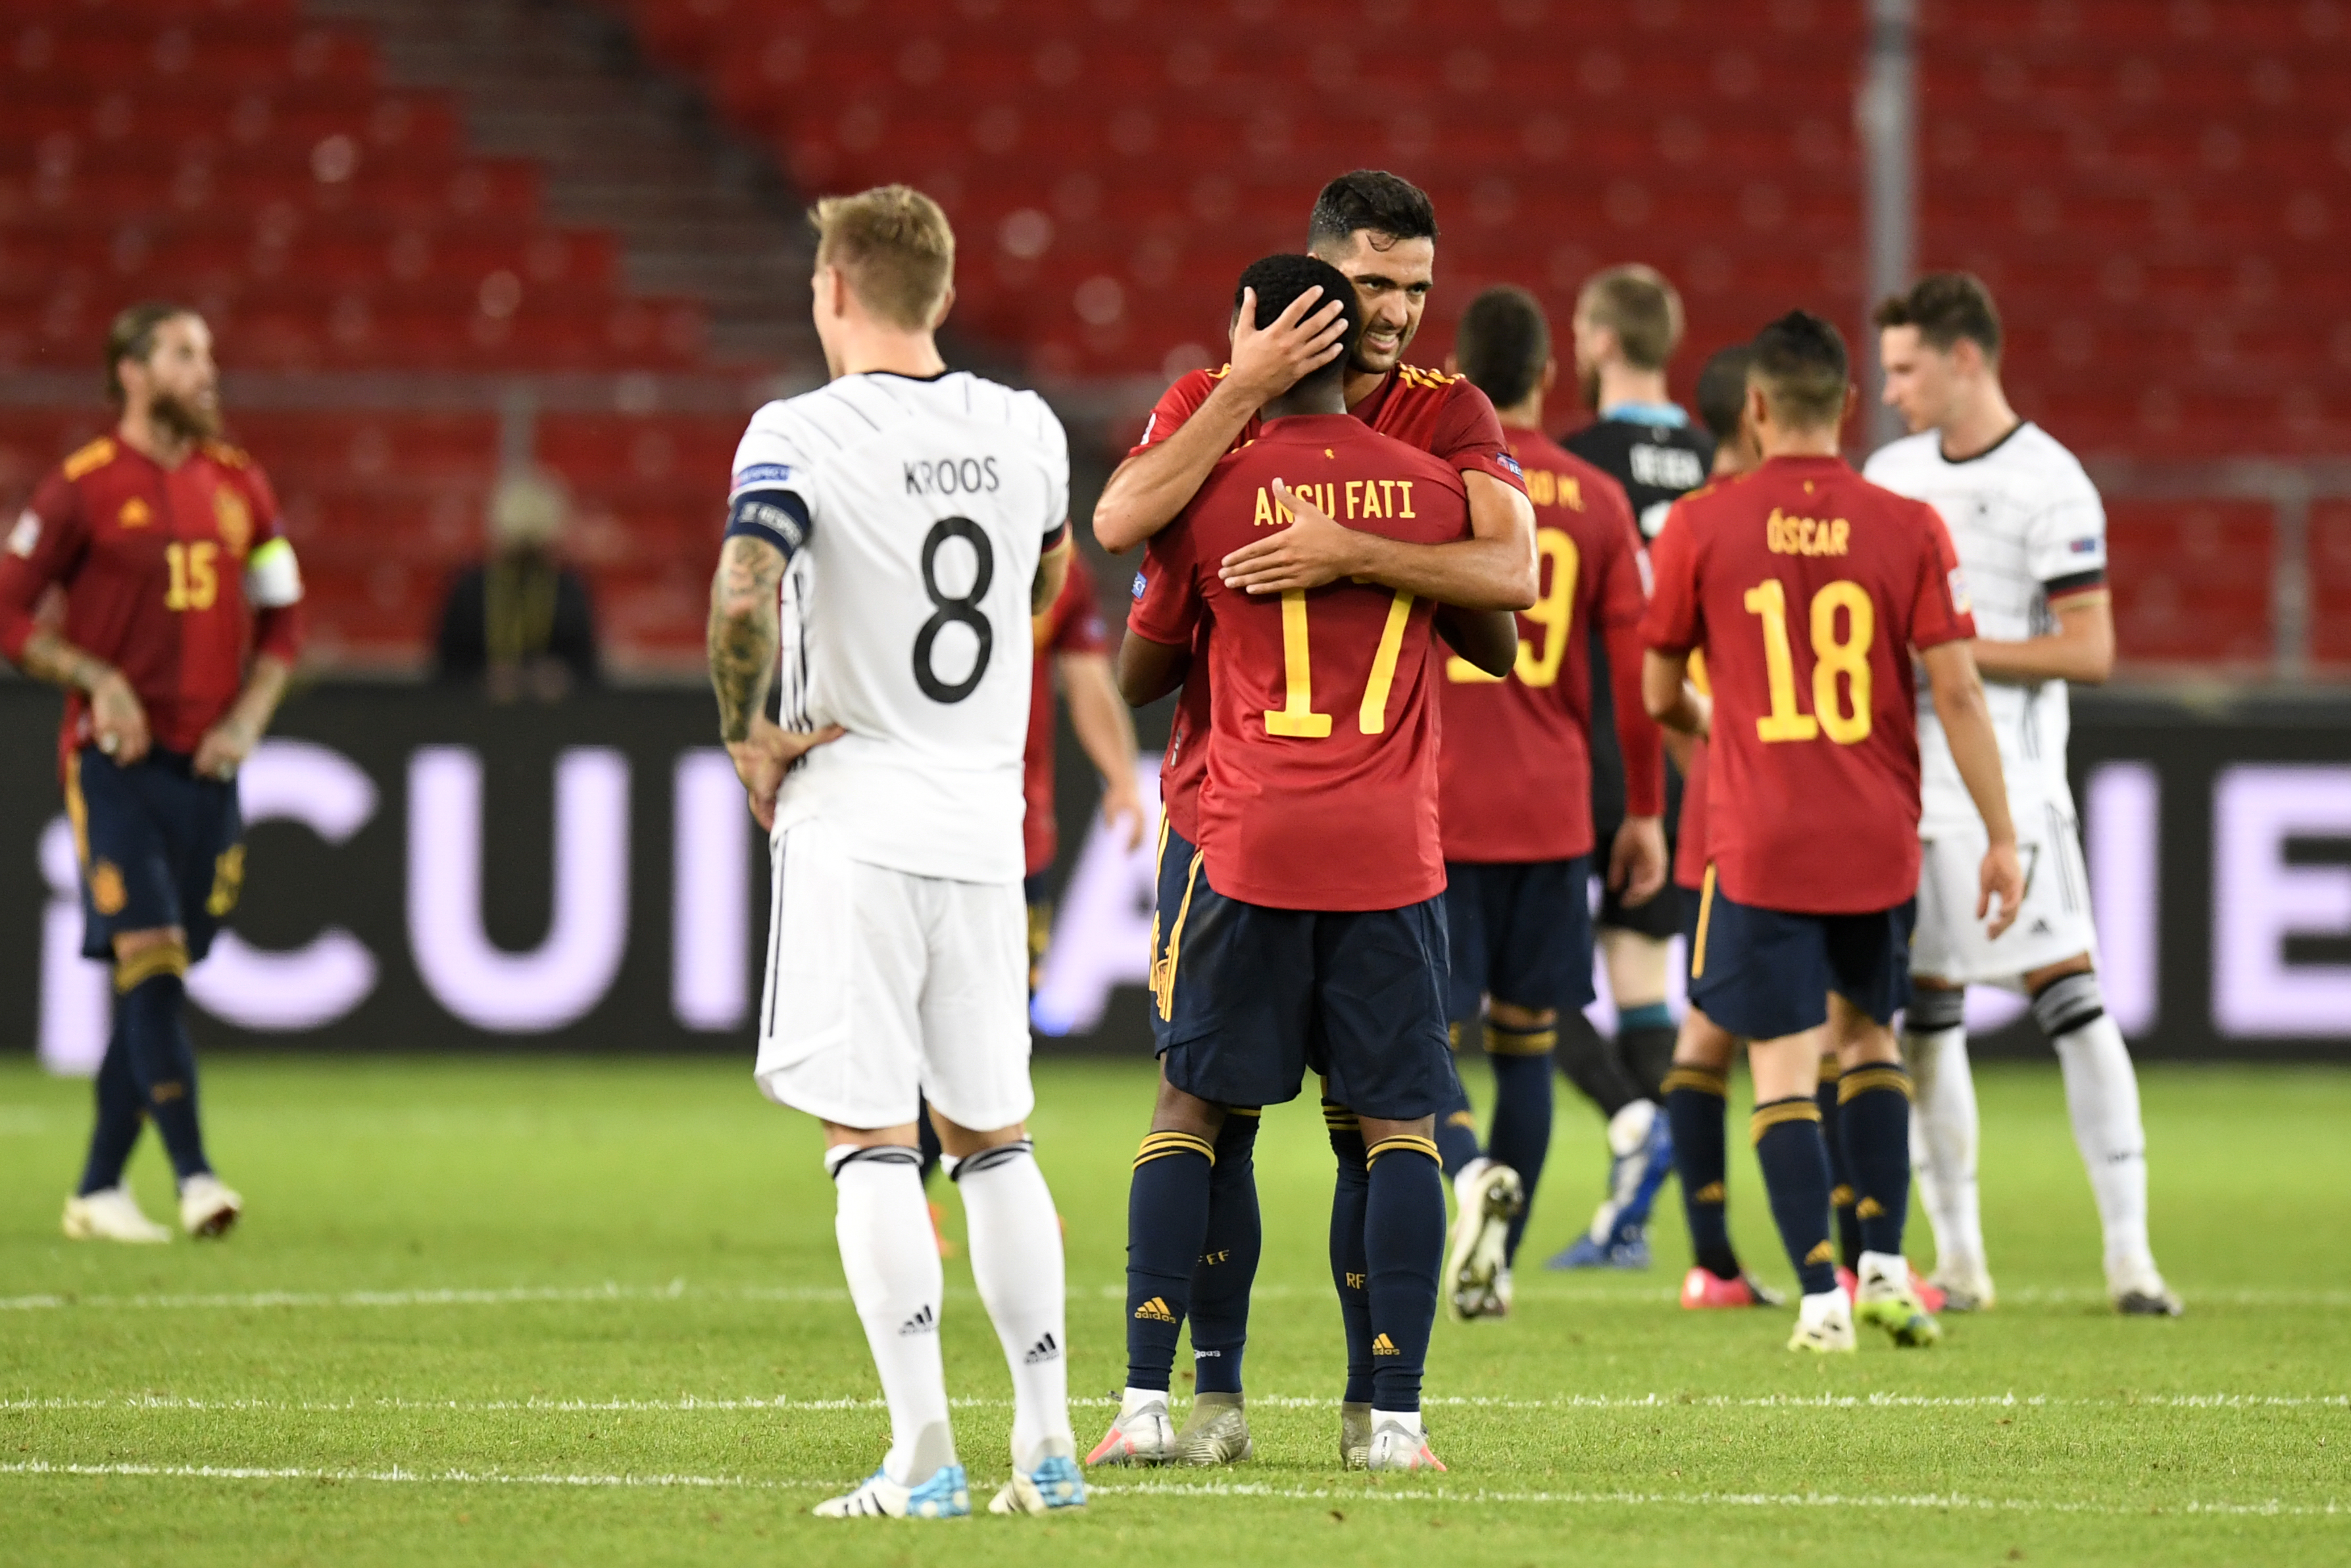 España rescata un empate con Alemania en el debut de Ansu Fati